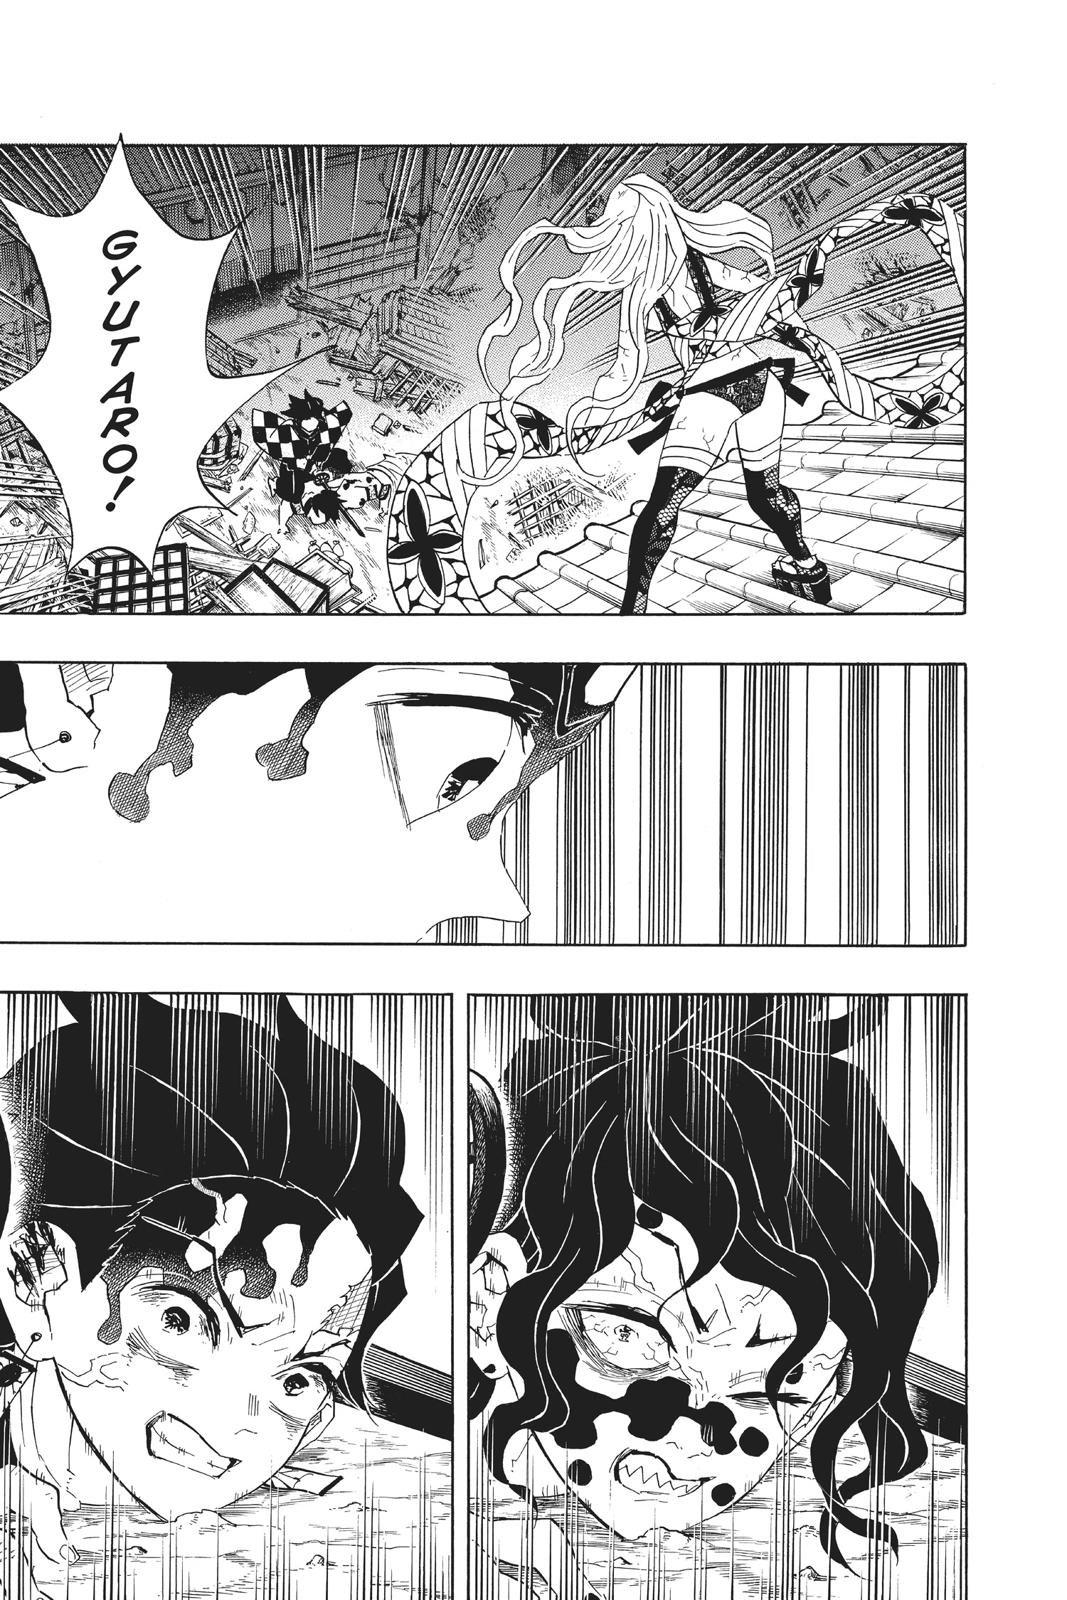 Demon Slayer Manga Manga Chapter - 93 - image 3